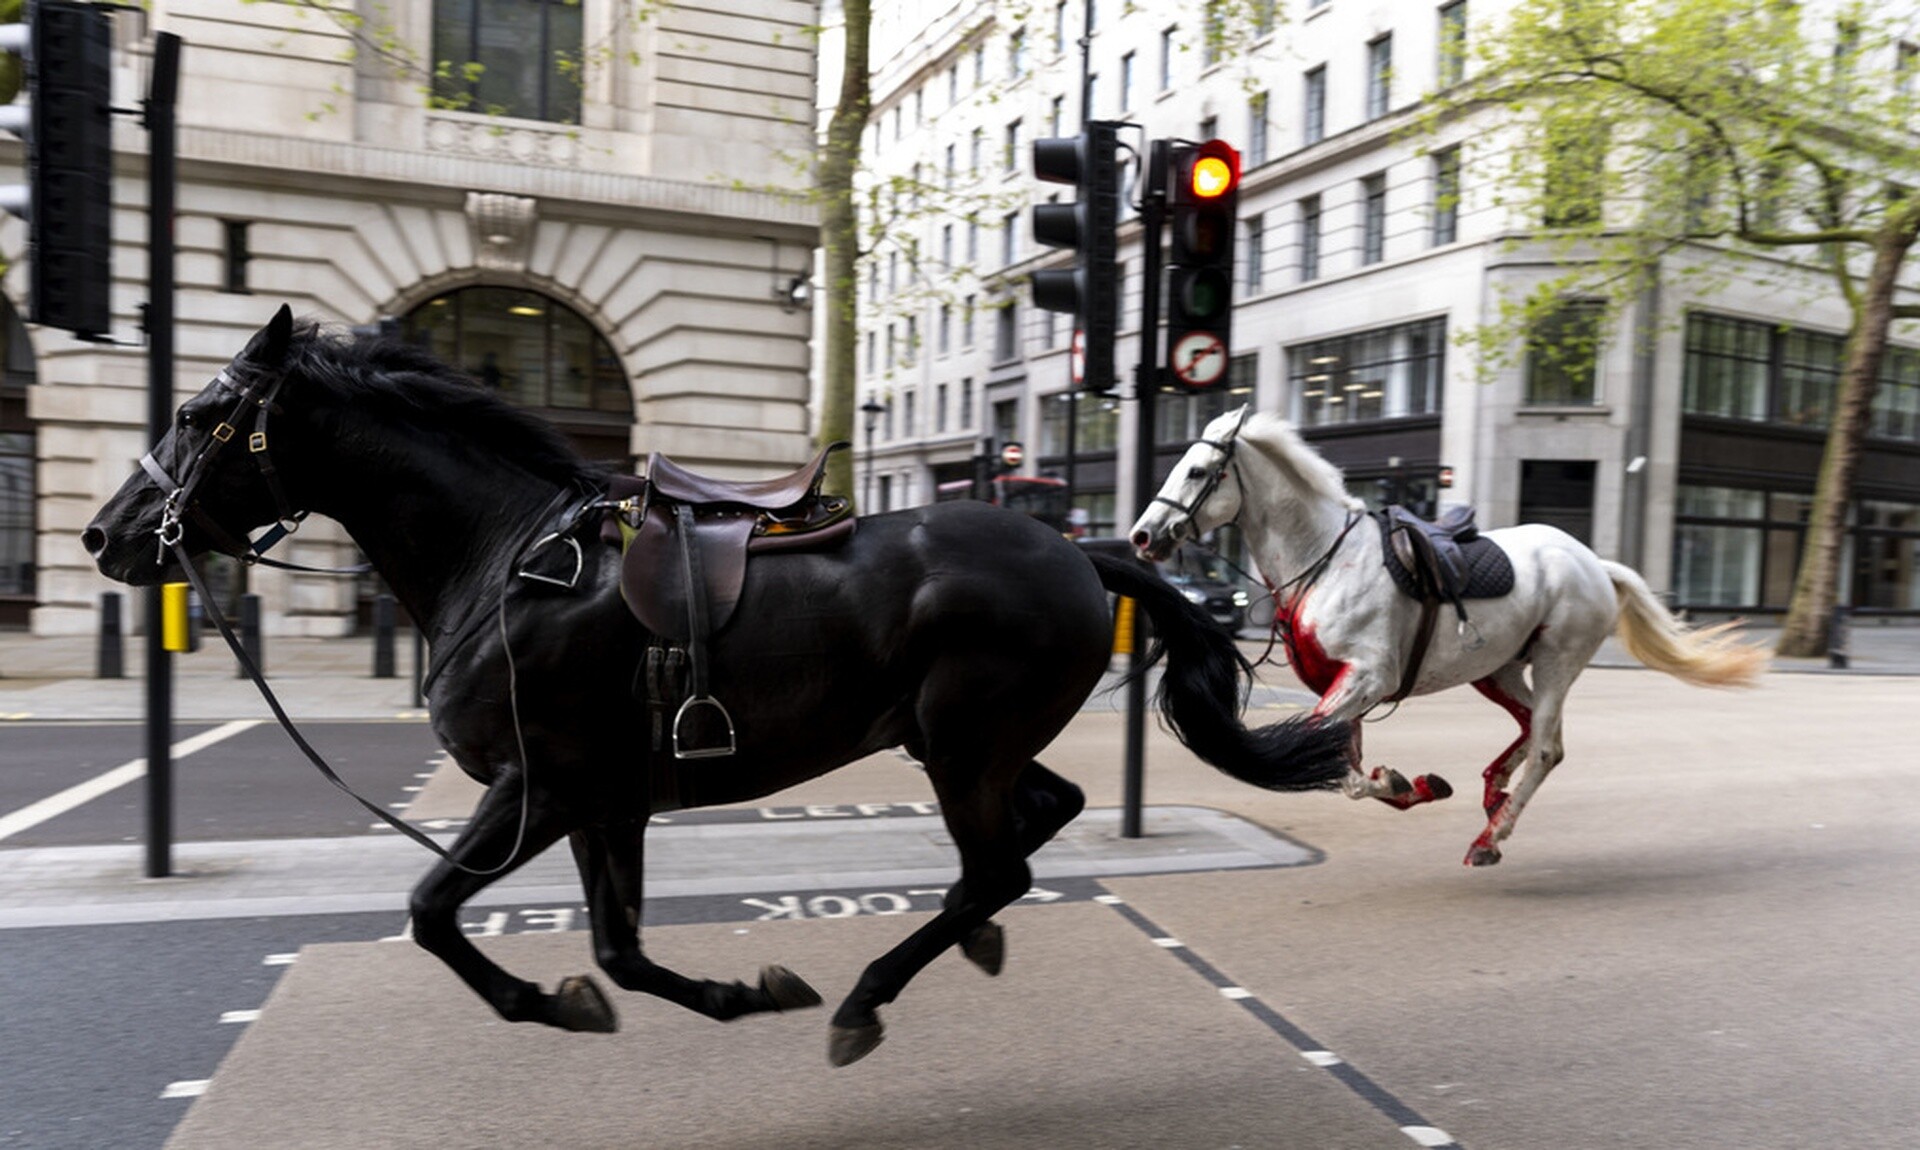 Βρετανία: Σε «σοβαρή κατάσταση» δύο από τα άλογα που είχαν αποδράσει στο κέντρο του Λονδίνου